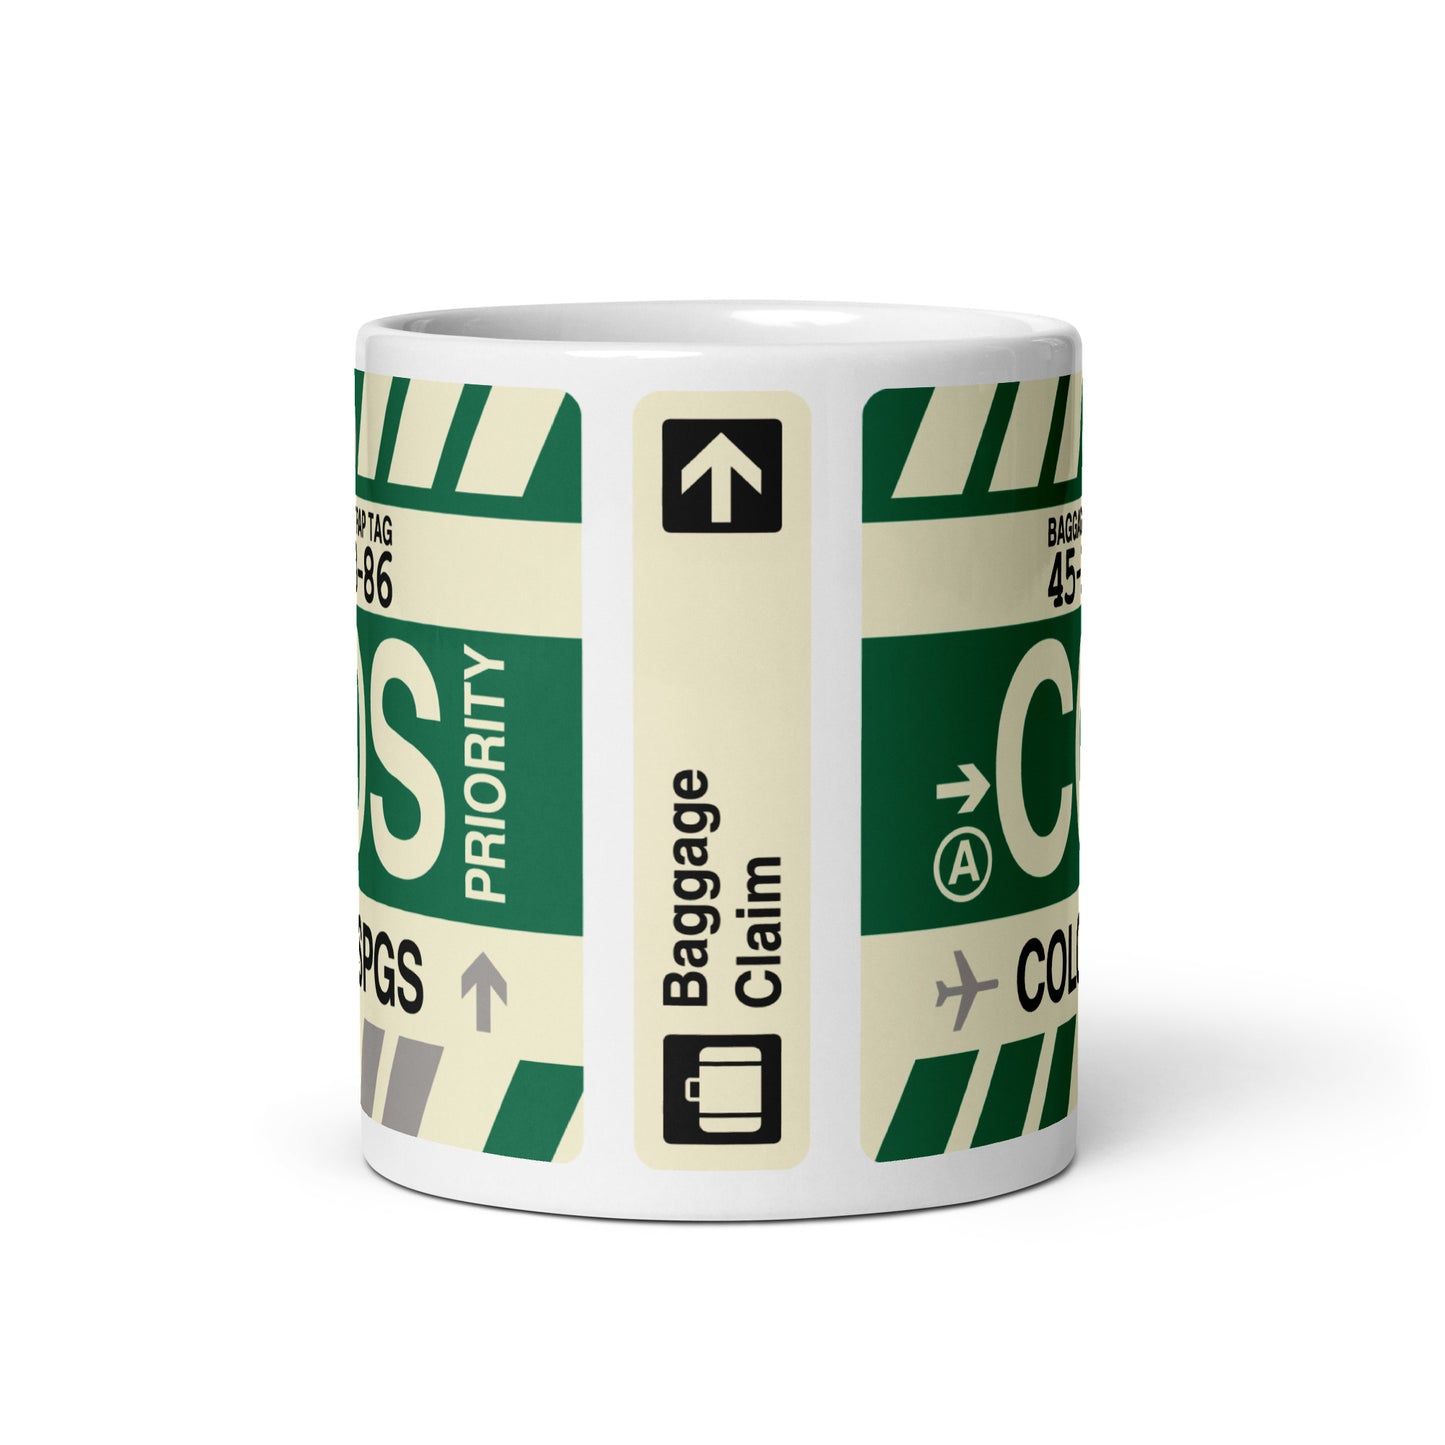 Travel-Themed Coffee Mug • COS Colorado Springs • YHM Designs - Image 02